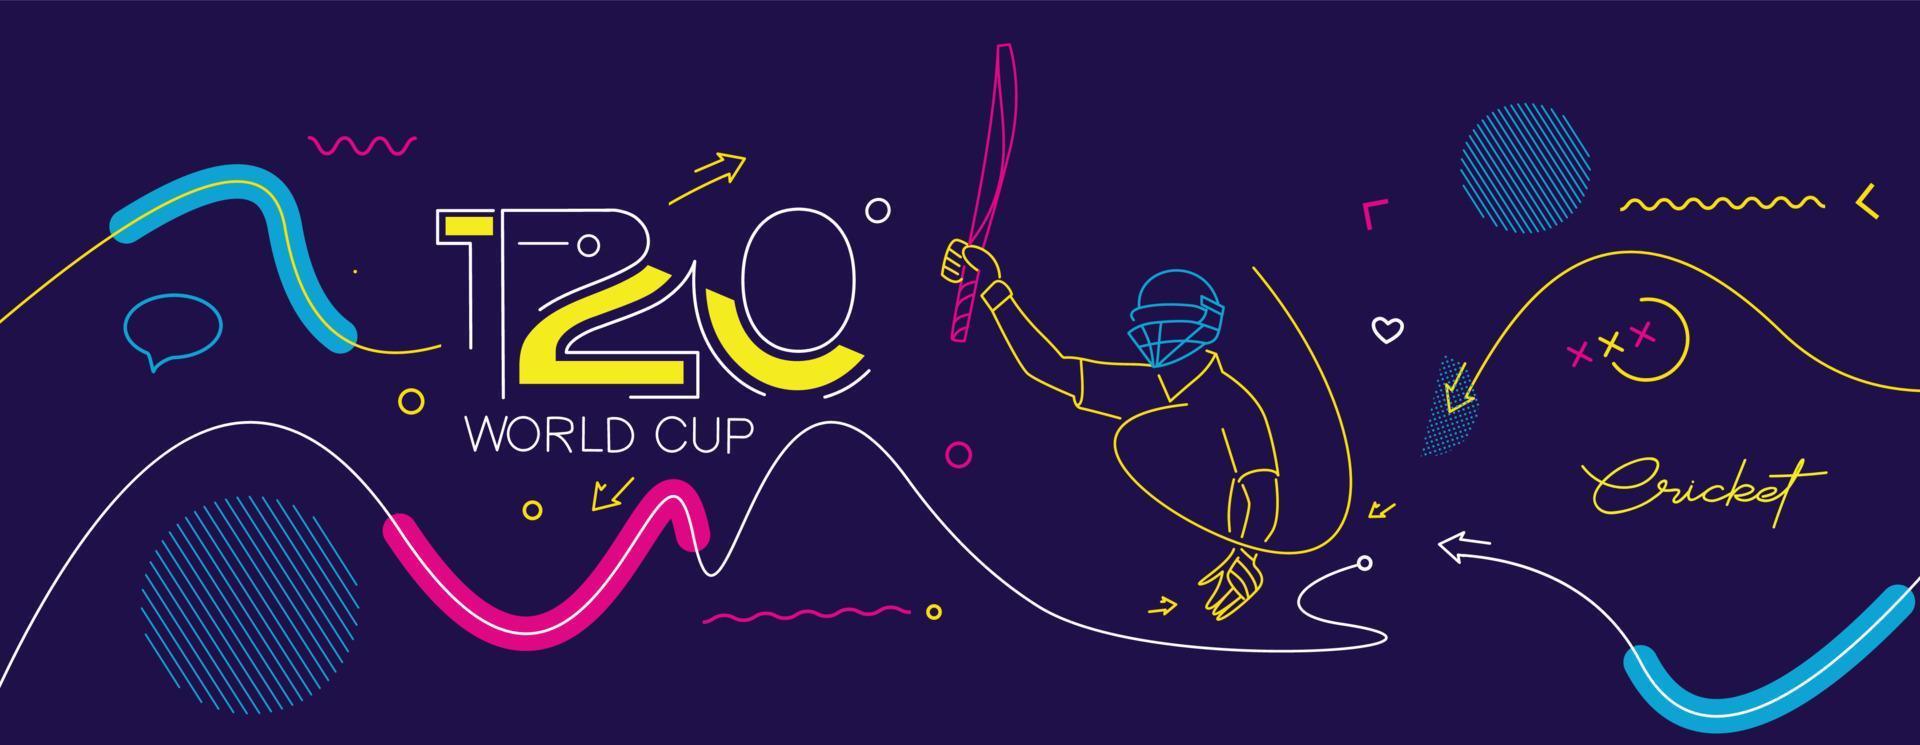 pôster do campeonato de críquete da copa do mundo t20, modelo, folheto, decorado, panfleto, design de banner. vetor